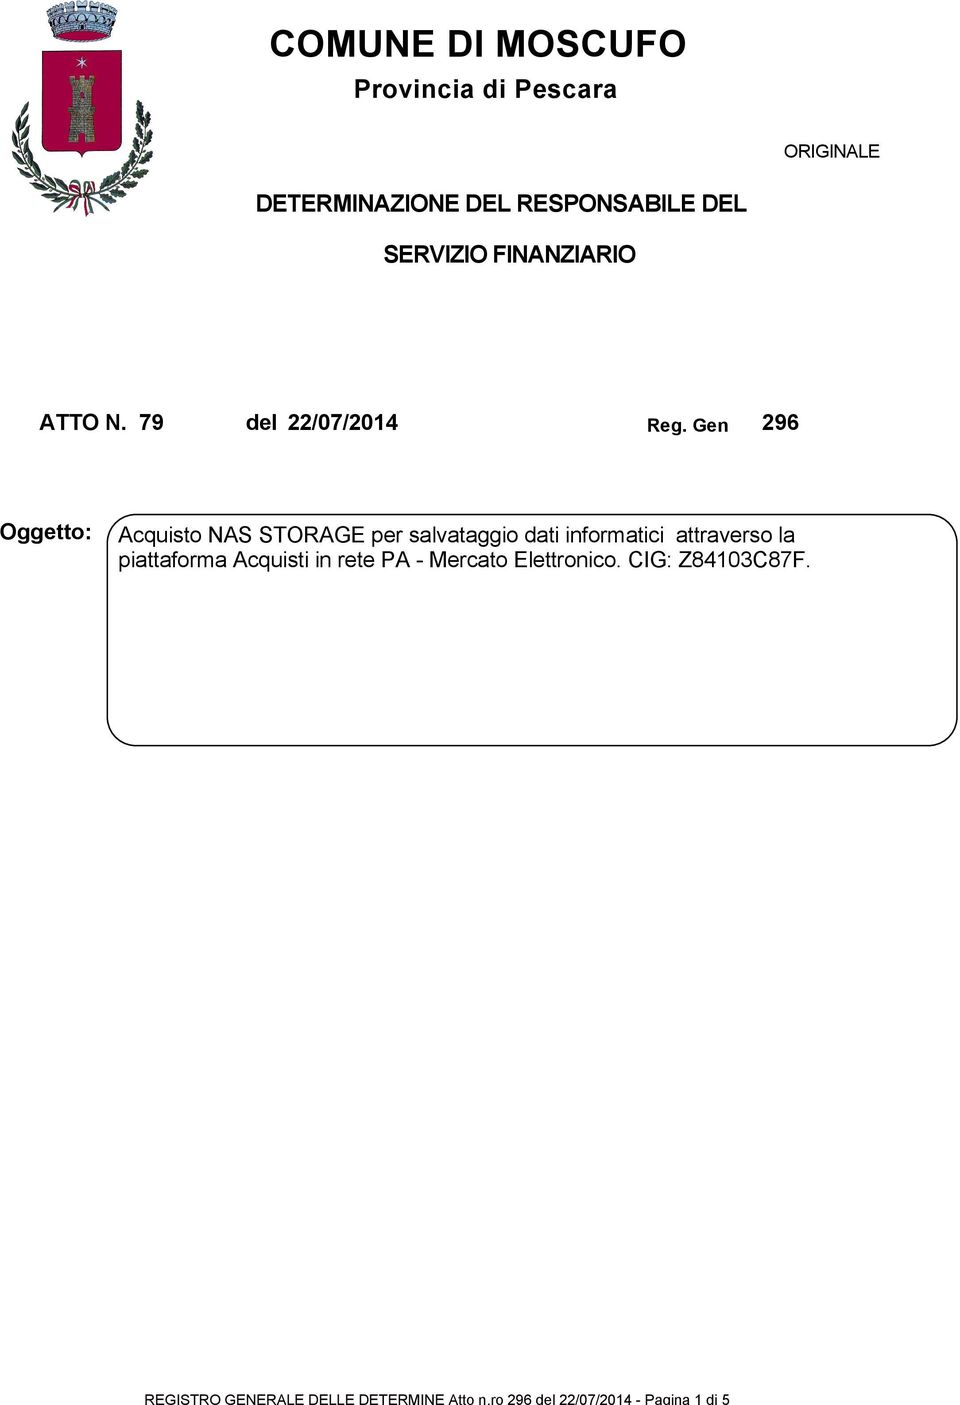 DETERMINAZIONE DEL RESPONSABILE DEL SERVIZIO FINANZIARIO ATTO N. 79 del 22/07/2014 Reg.